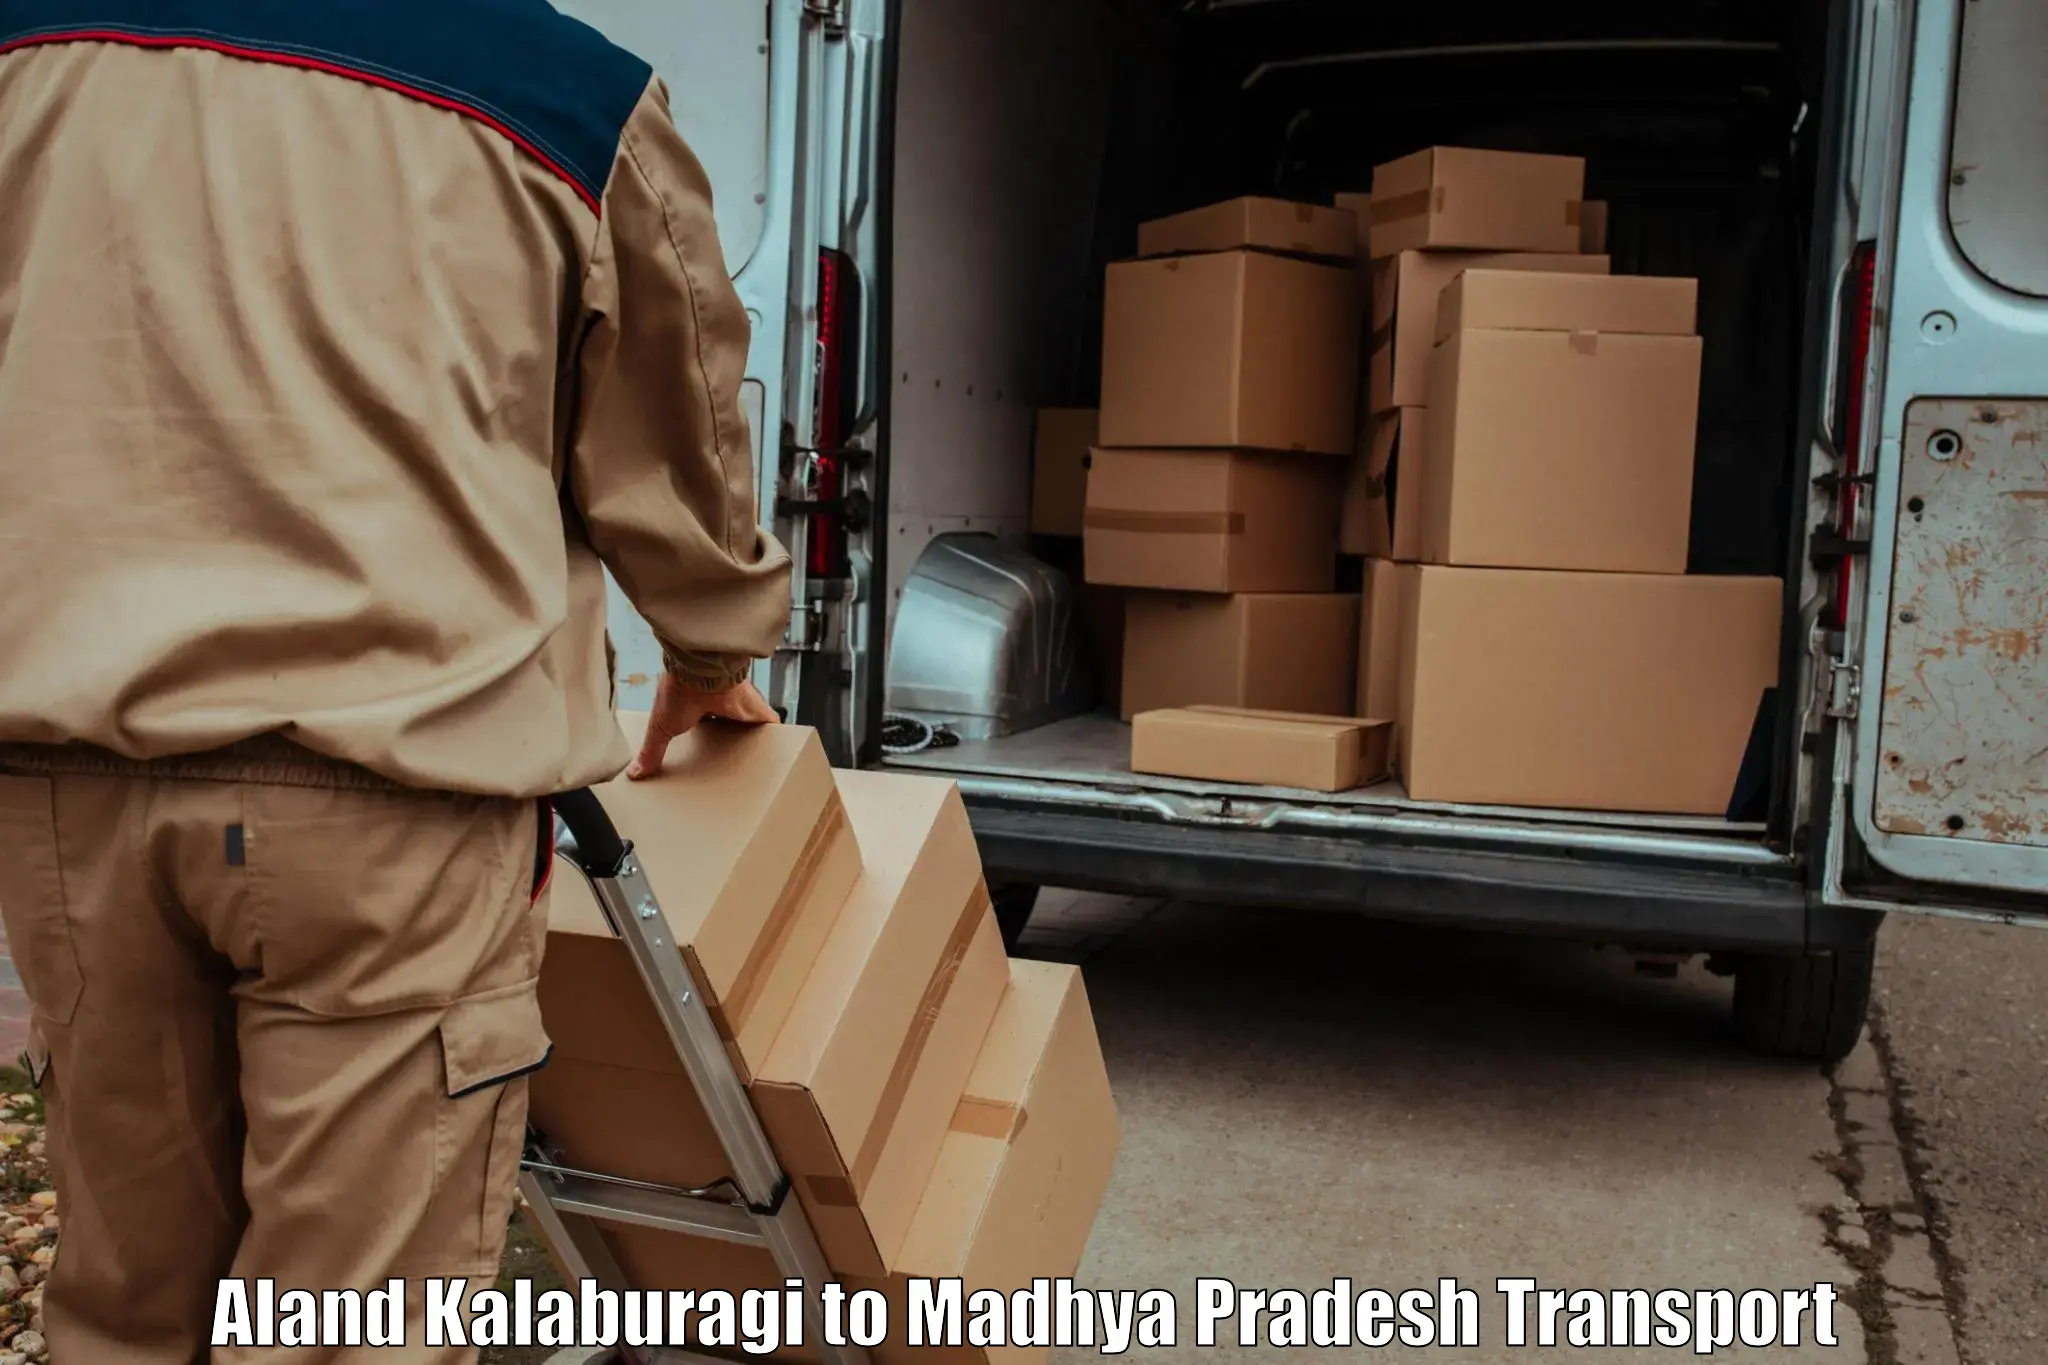 Container transport service Aland Kalaburagi to Ambah